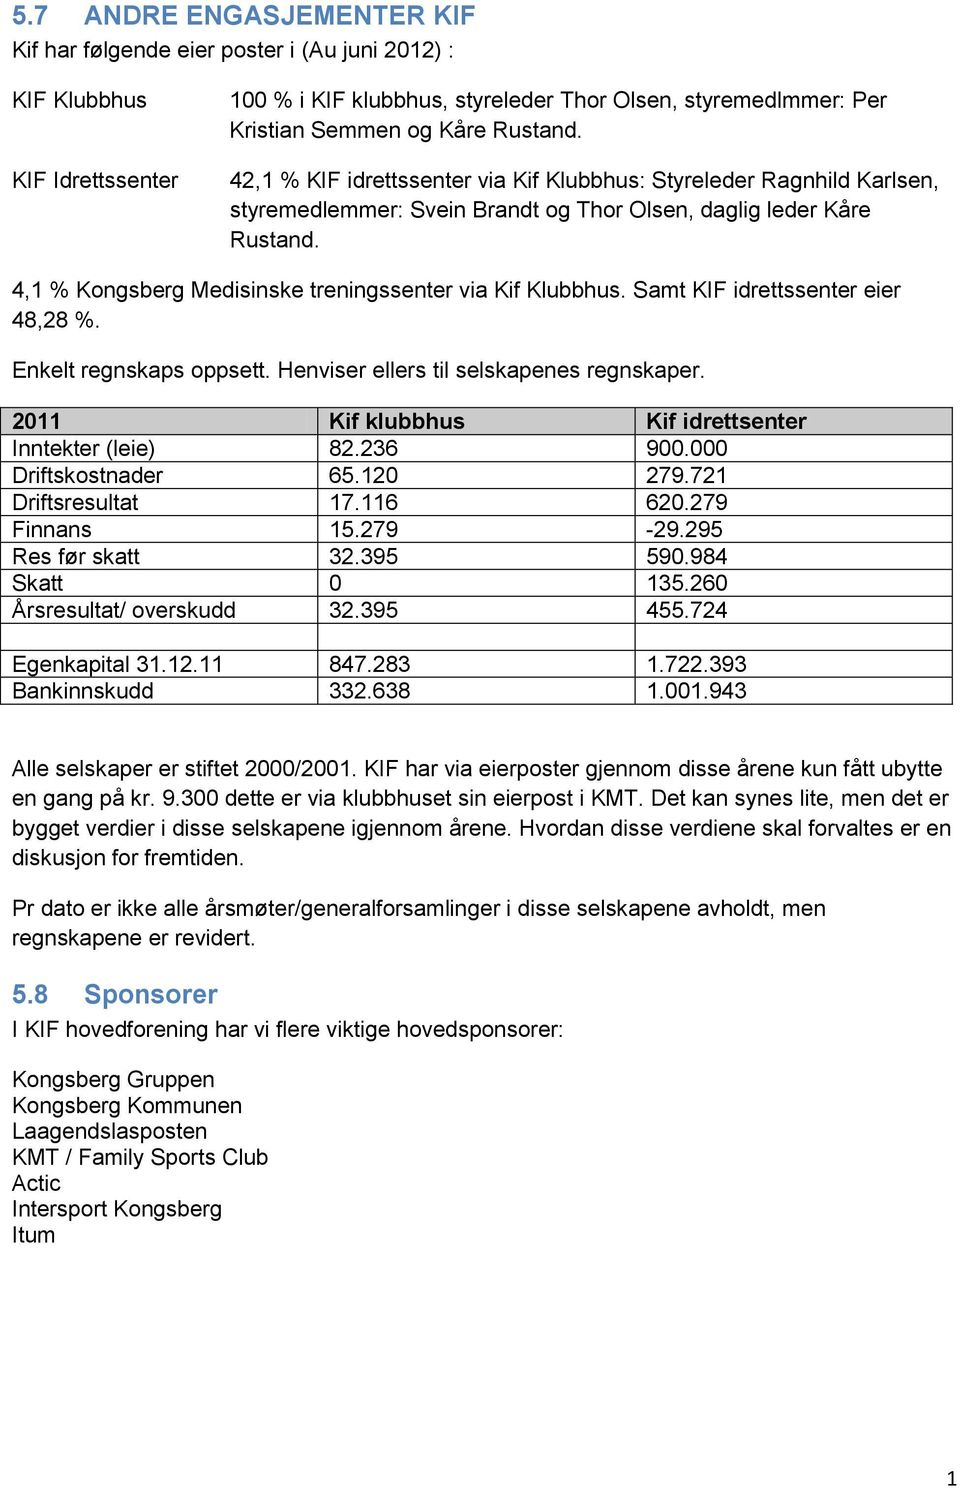 4,1 % Kongsberg Medisinske treningssenter via Kif Klubbhus. Samt KIF idrettssenter eier 48,28 %. Enkelt regnskaps oppsett. Henviser ellers til selskapenes regnskaper.